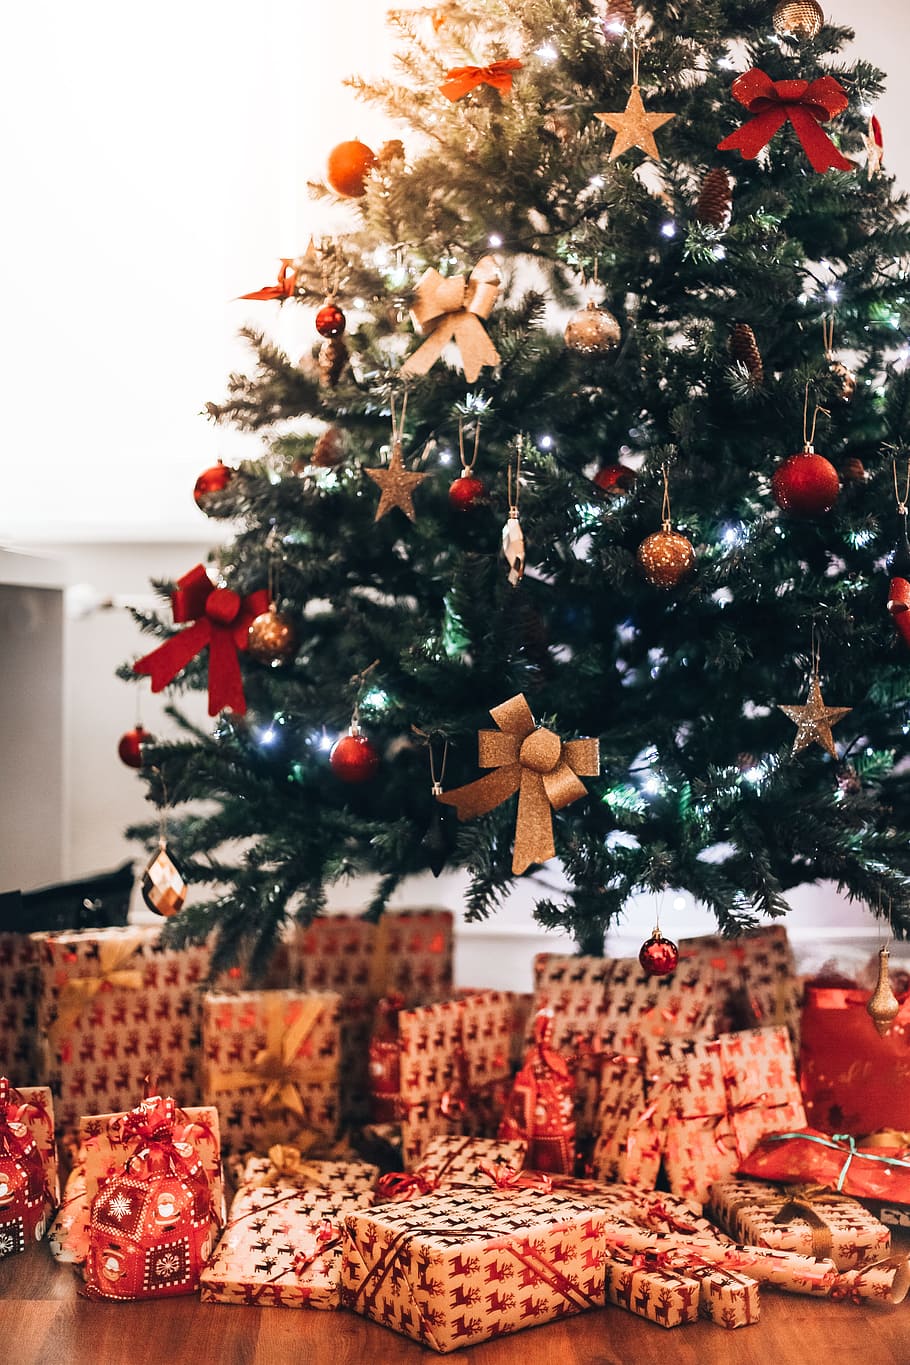 árbol de navidad, regalos, vertical, celebración, navidad, decoración navideña, regalos de navidad, diciembre, decoraciones, decorativos